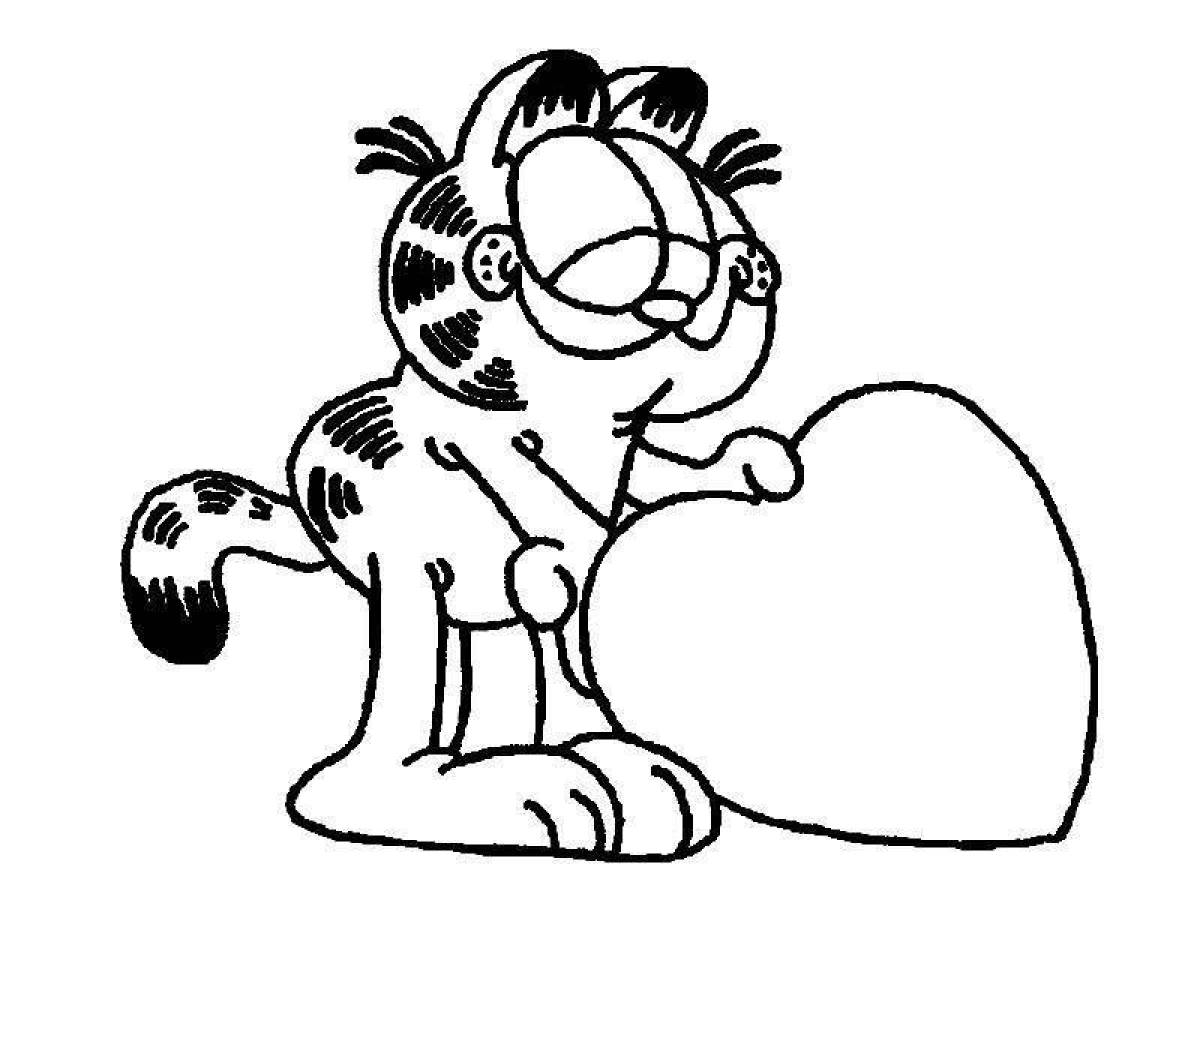 Fun Garfield coloring book